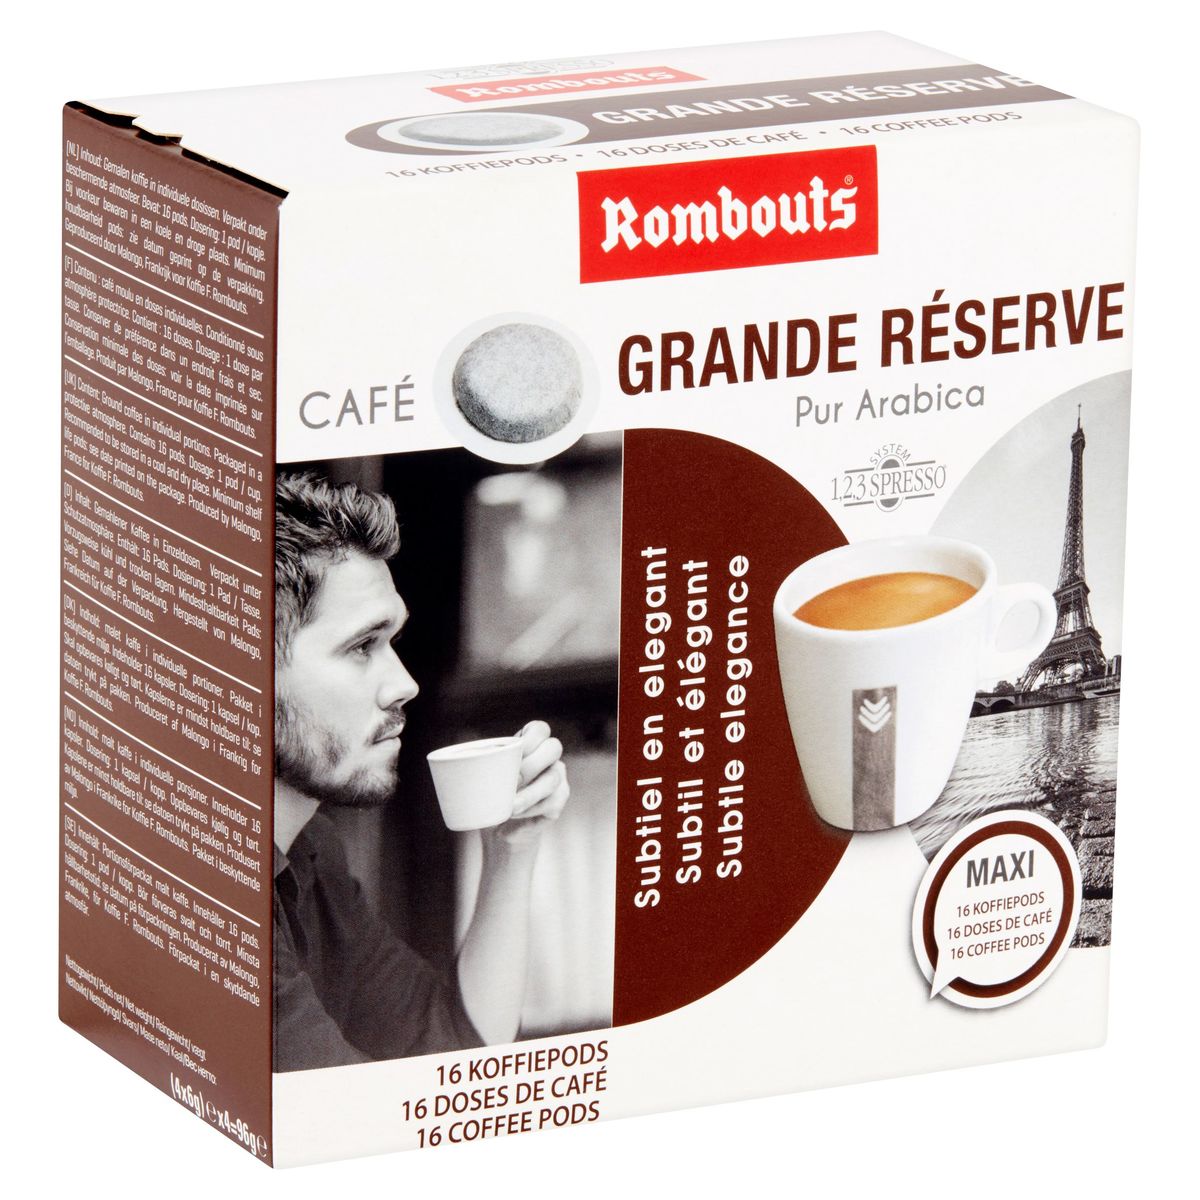 Rombouts Café Grande Réserve Pur Arabica 16 Doses de Café 4 x 4 x 6 g